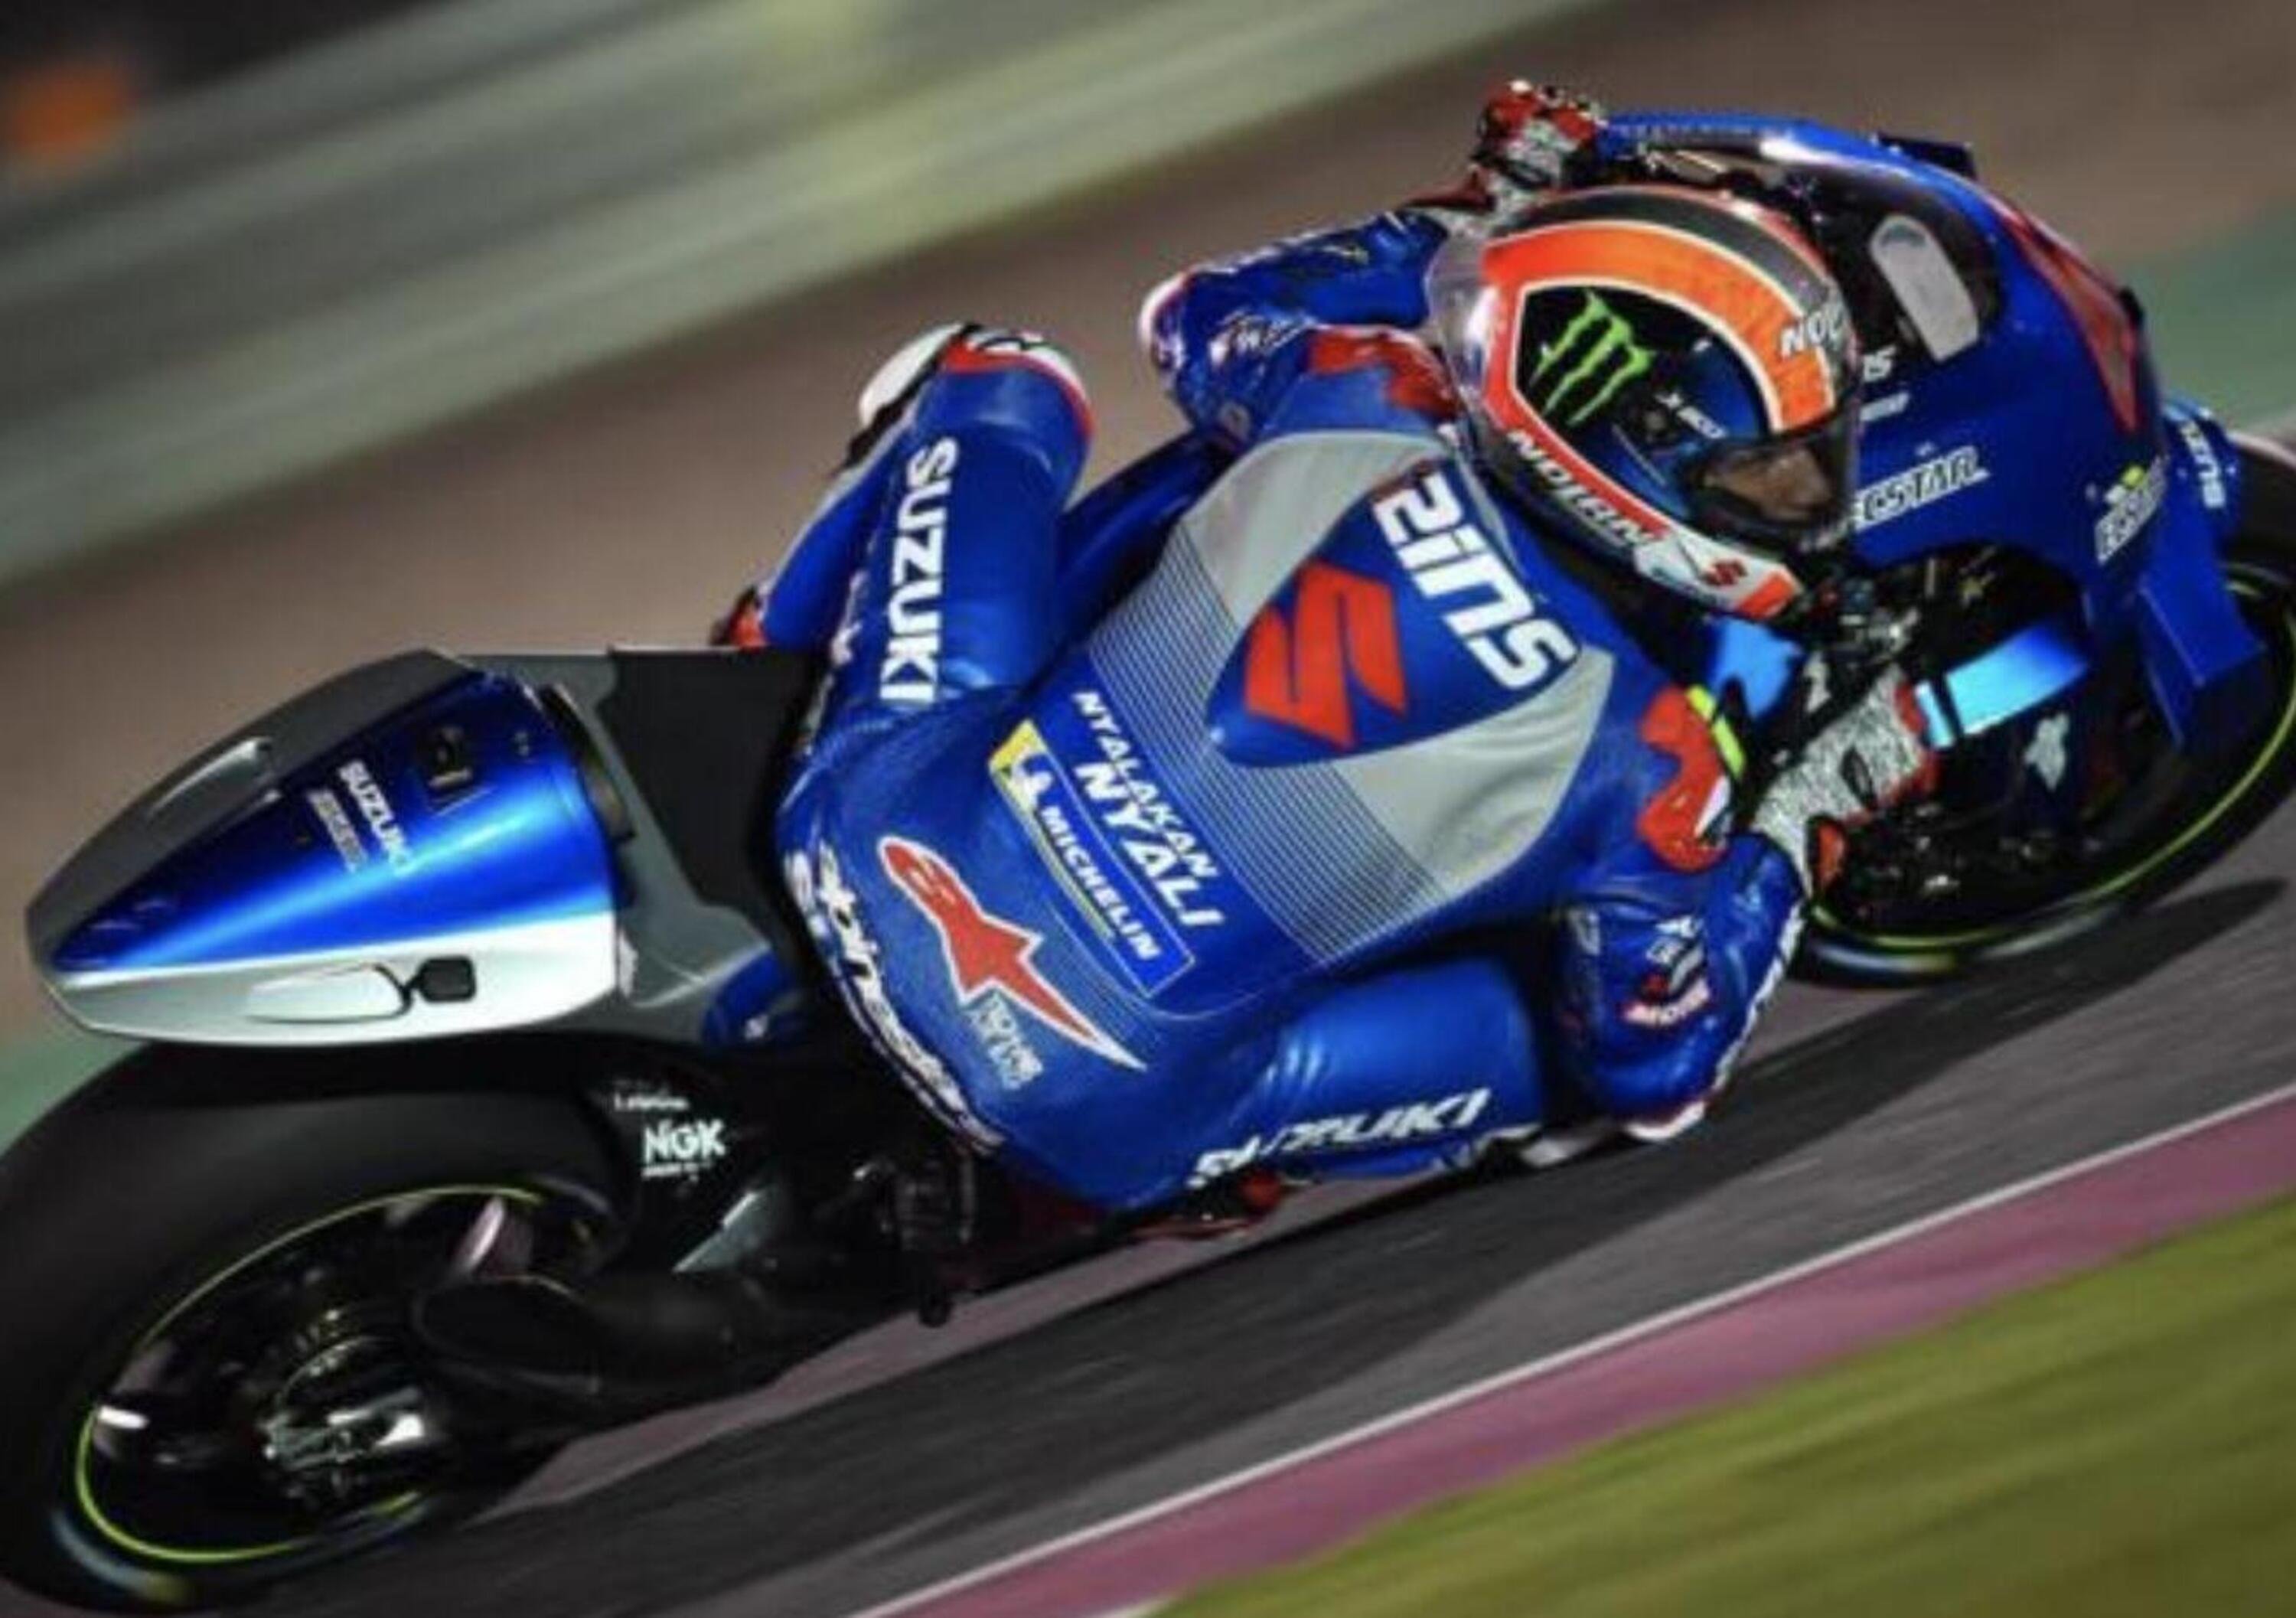 MotoGP, test in Qatar - Day 1: dominio Suzuki. Bene Aprilia, in difficolt&agrave; Ducati